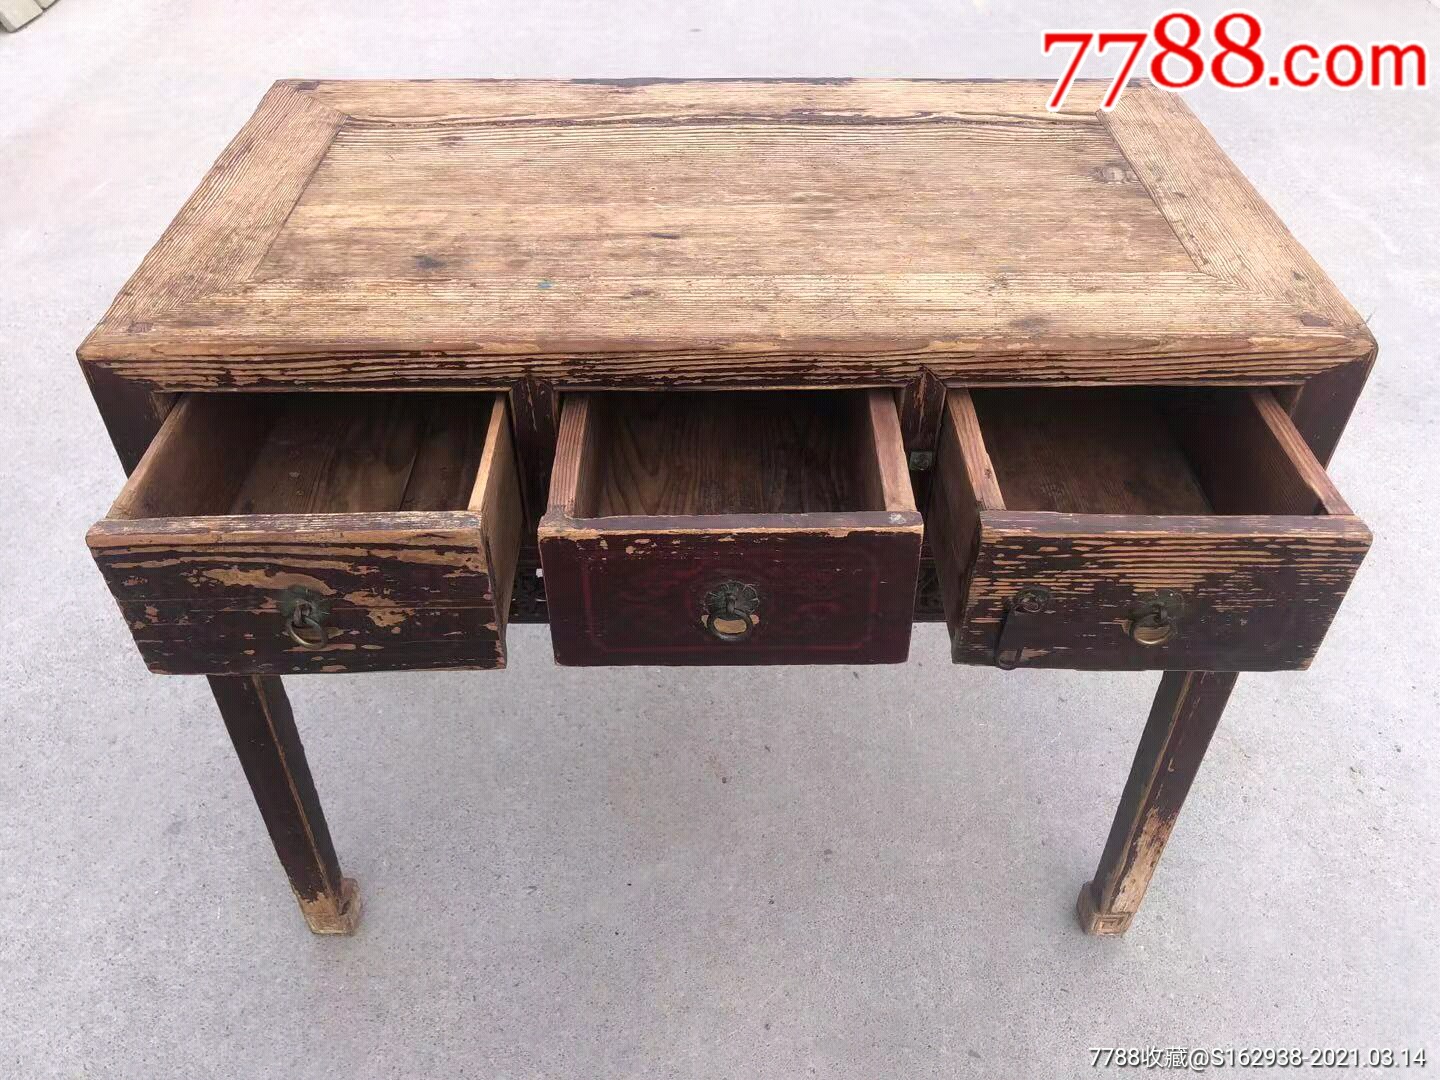 清代书桌,楸木材质,结实典雅,铜件齐全,雕刻精美,寓意吉祥,古韵浓厚